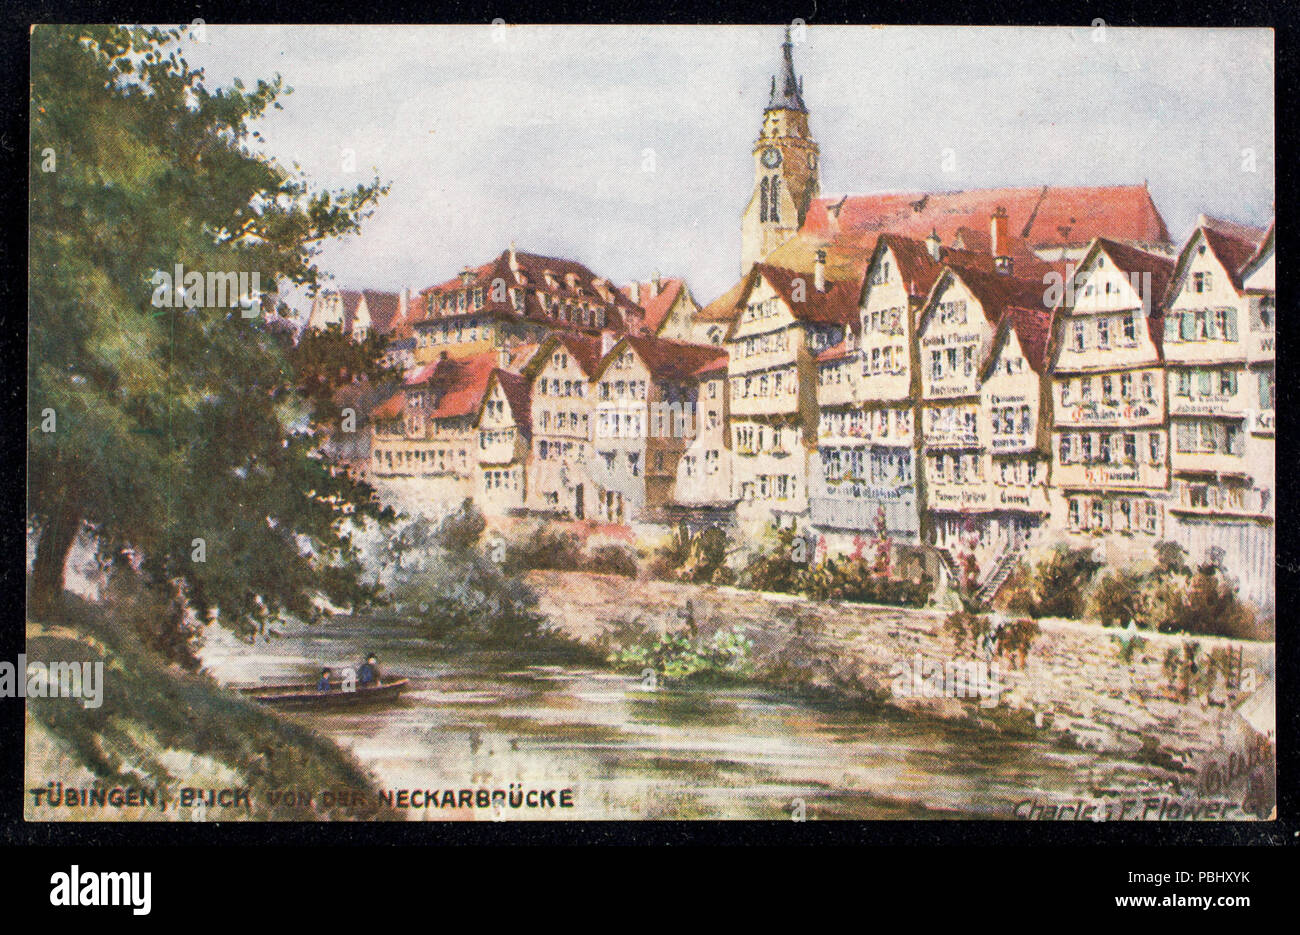 1776 Tubingen, Blick von der Neckarbrucke (BNI 442479) Foto Stock